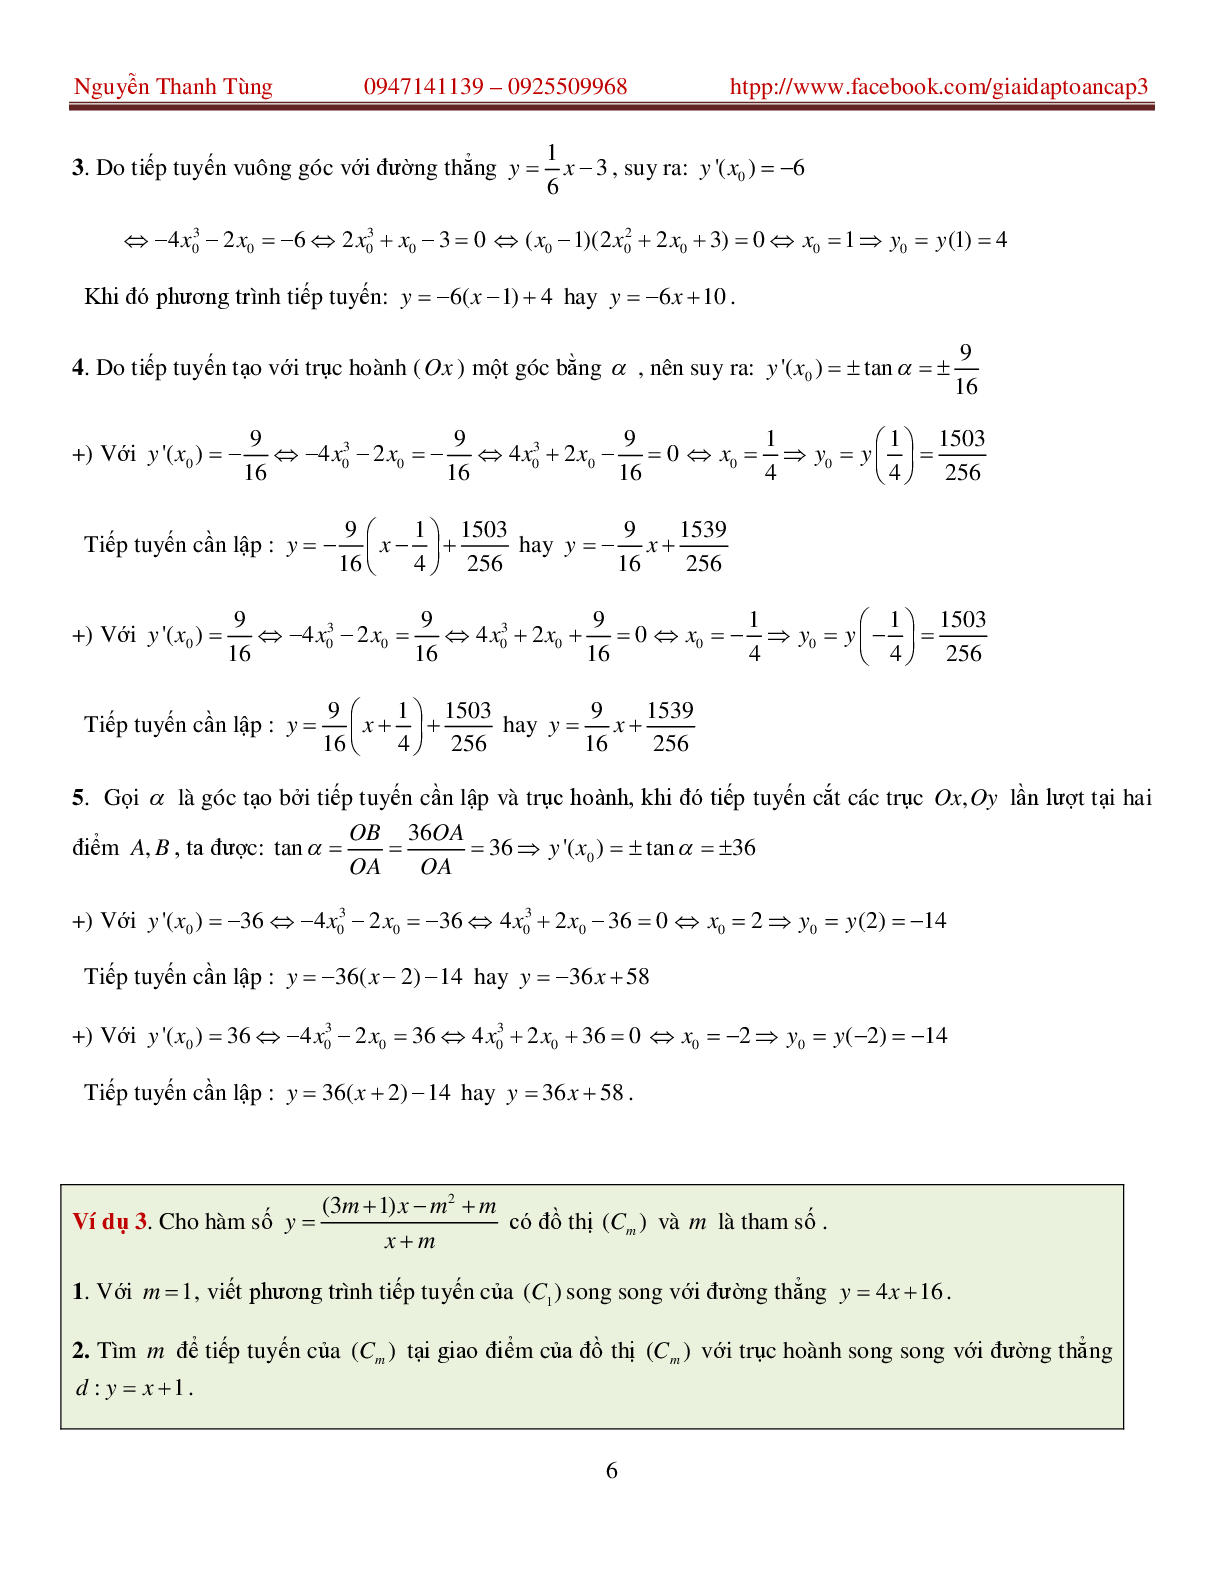 Khảo sát hàm số và các bài toán liên quan - bản 2 (trang 6)